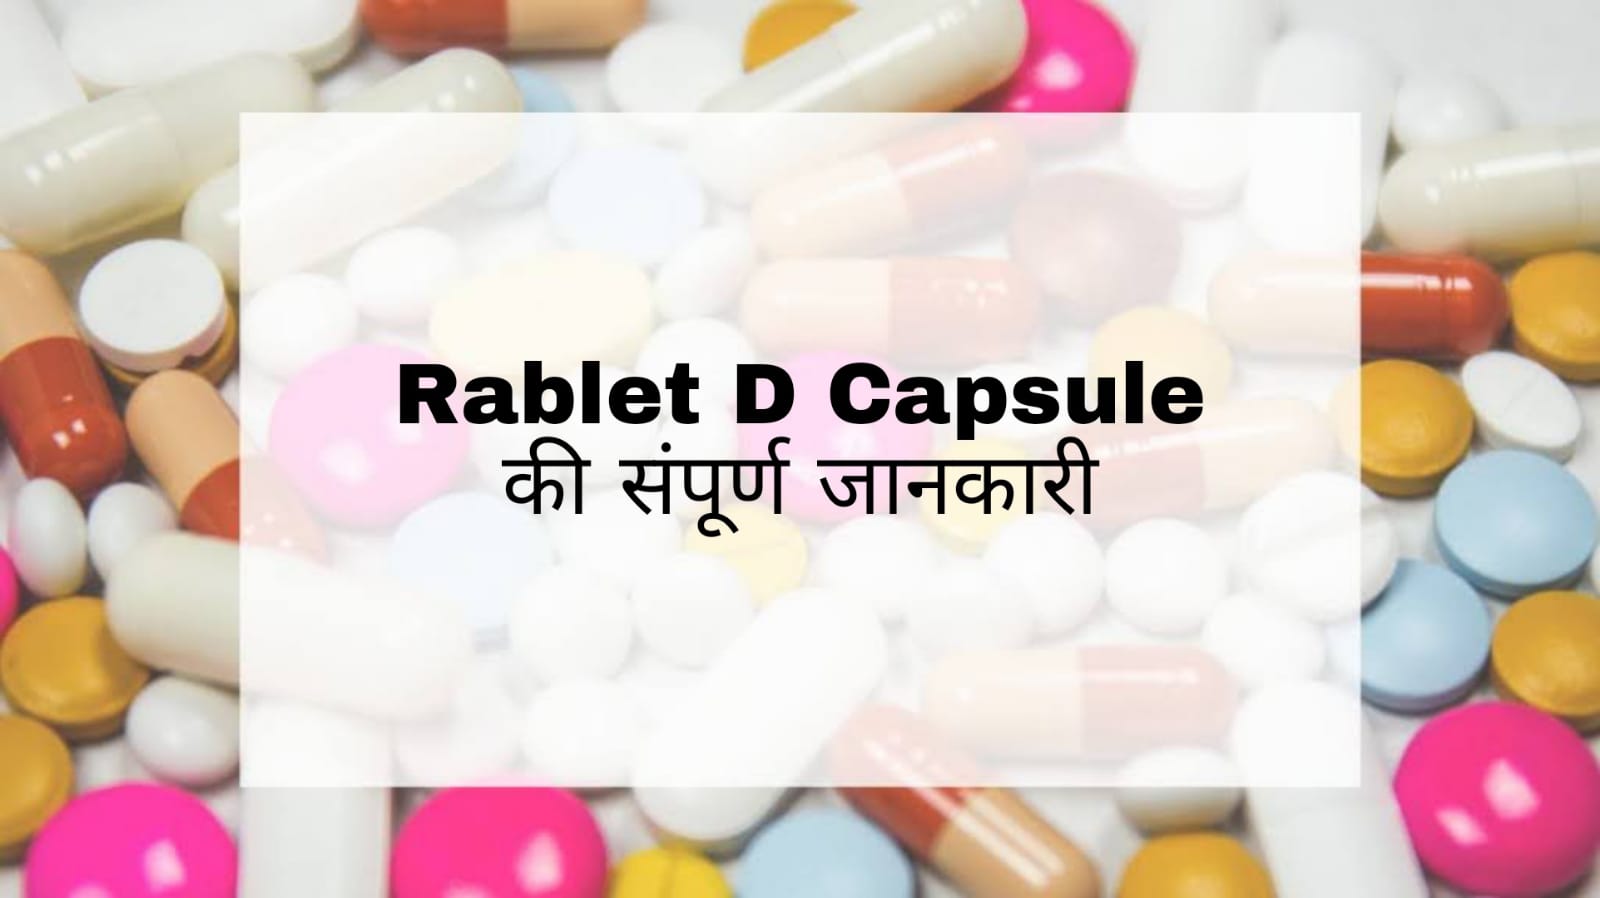 Rablet D Capsule Uses in Hindi